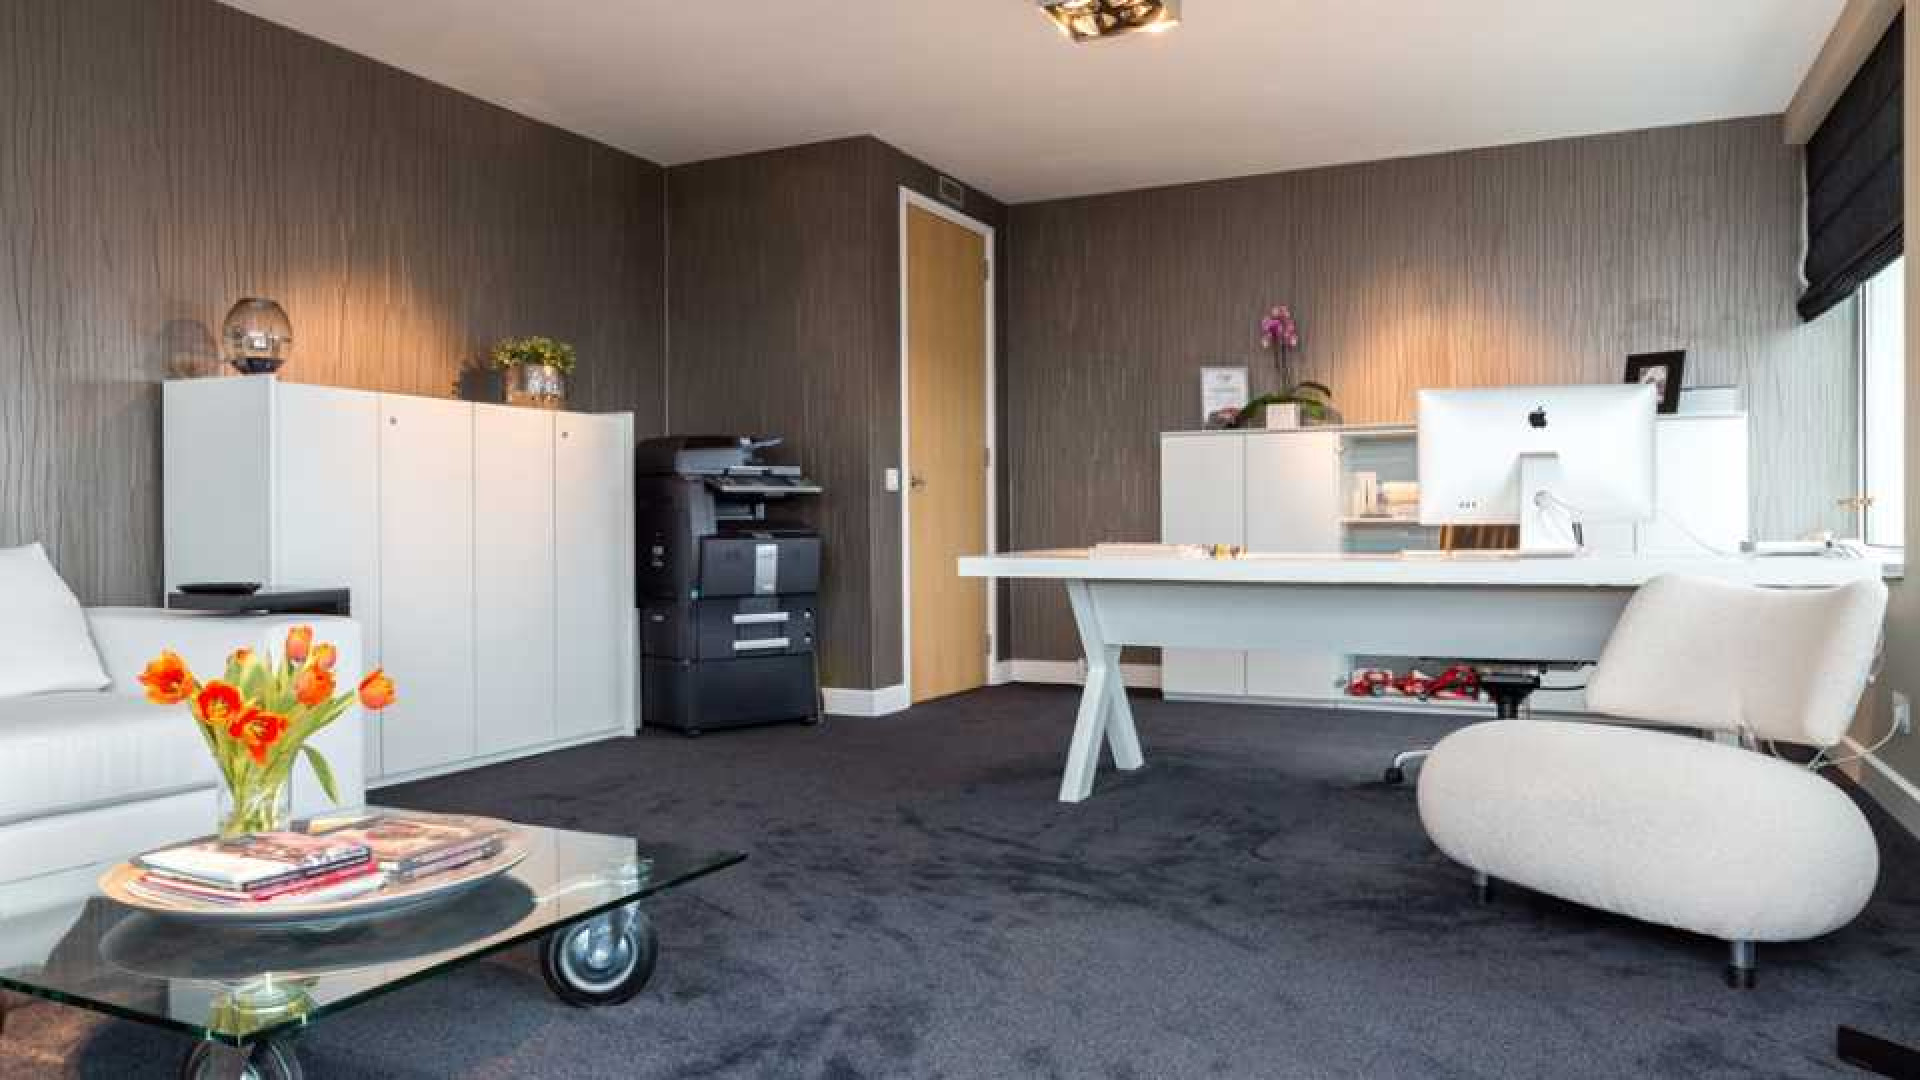 Amanda Krabbe en haar man Harrie Kolen zetten hun luxe penthouse in stille verkoop. Zie foto's 17